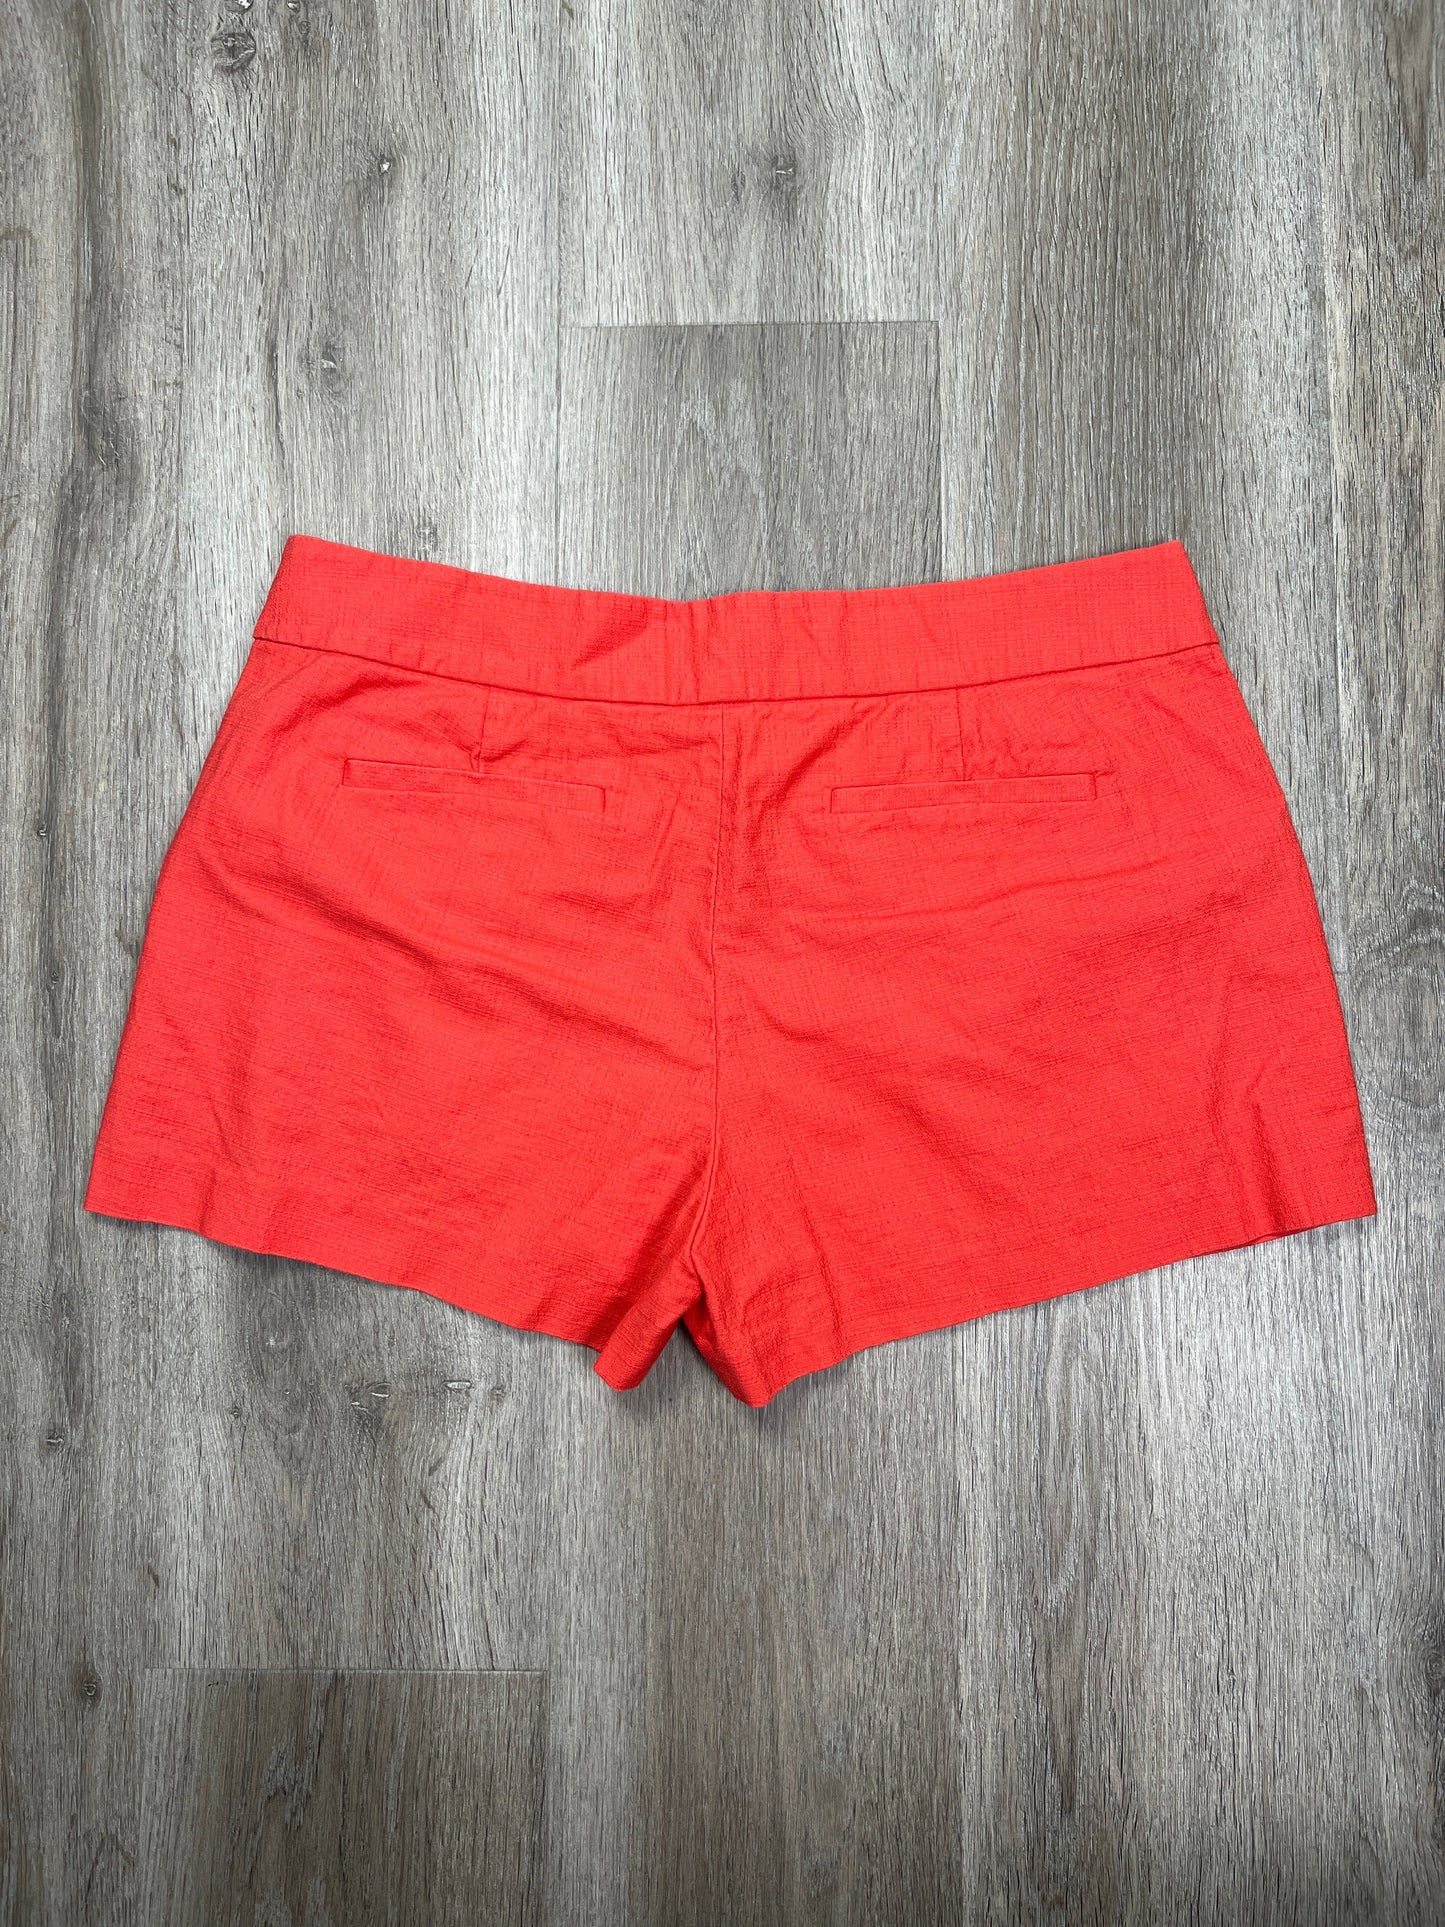 Orange Shorts J. Crew, Size M